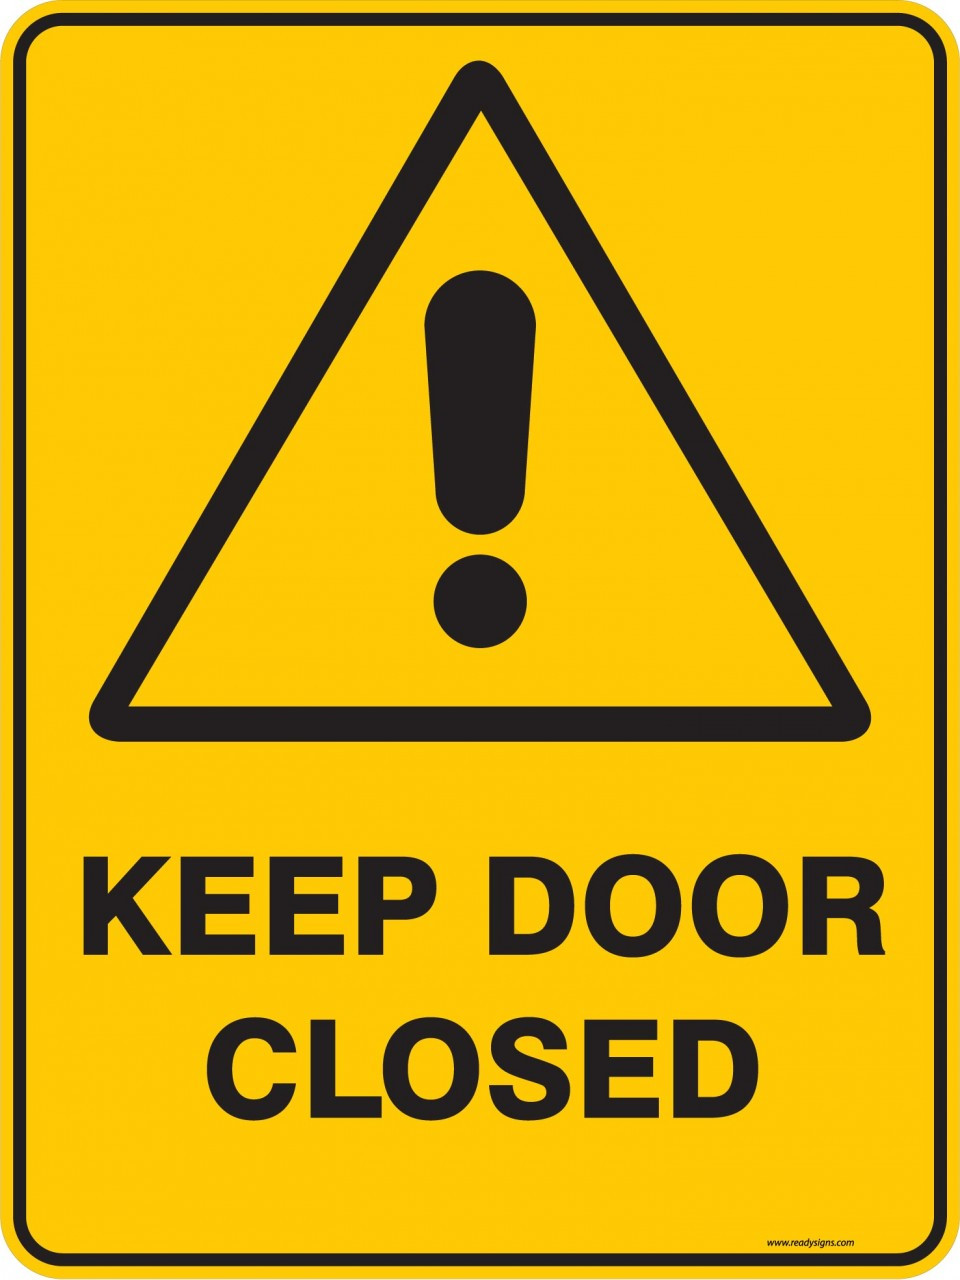 close-the-door-sign-keep-door-closed-graphic-sign-stock-vector